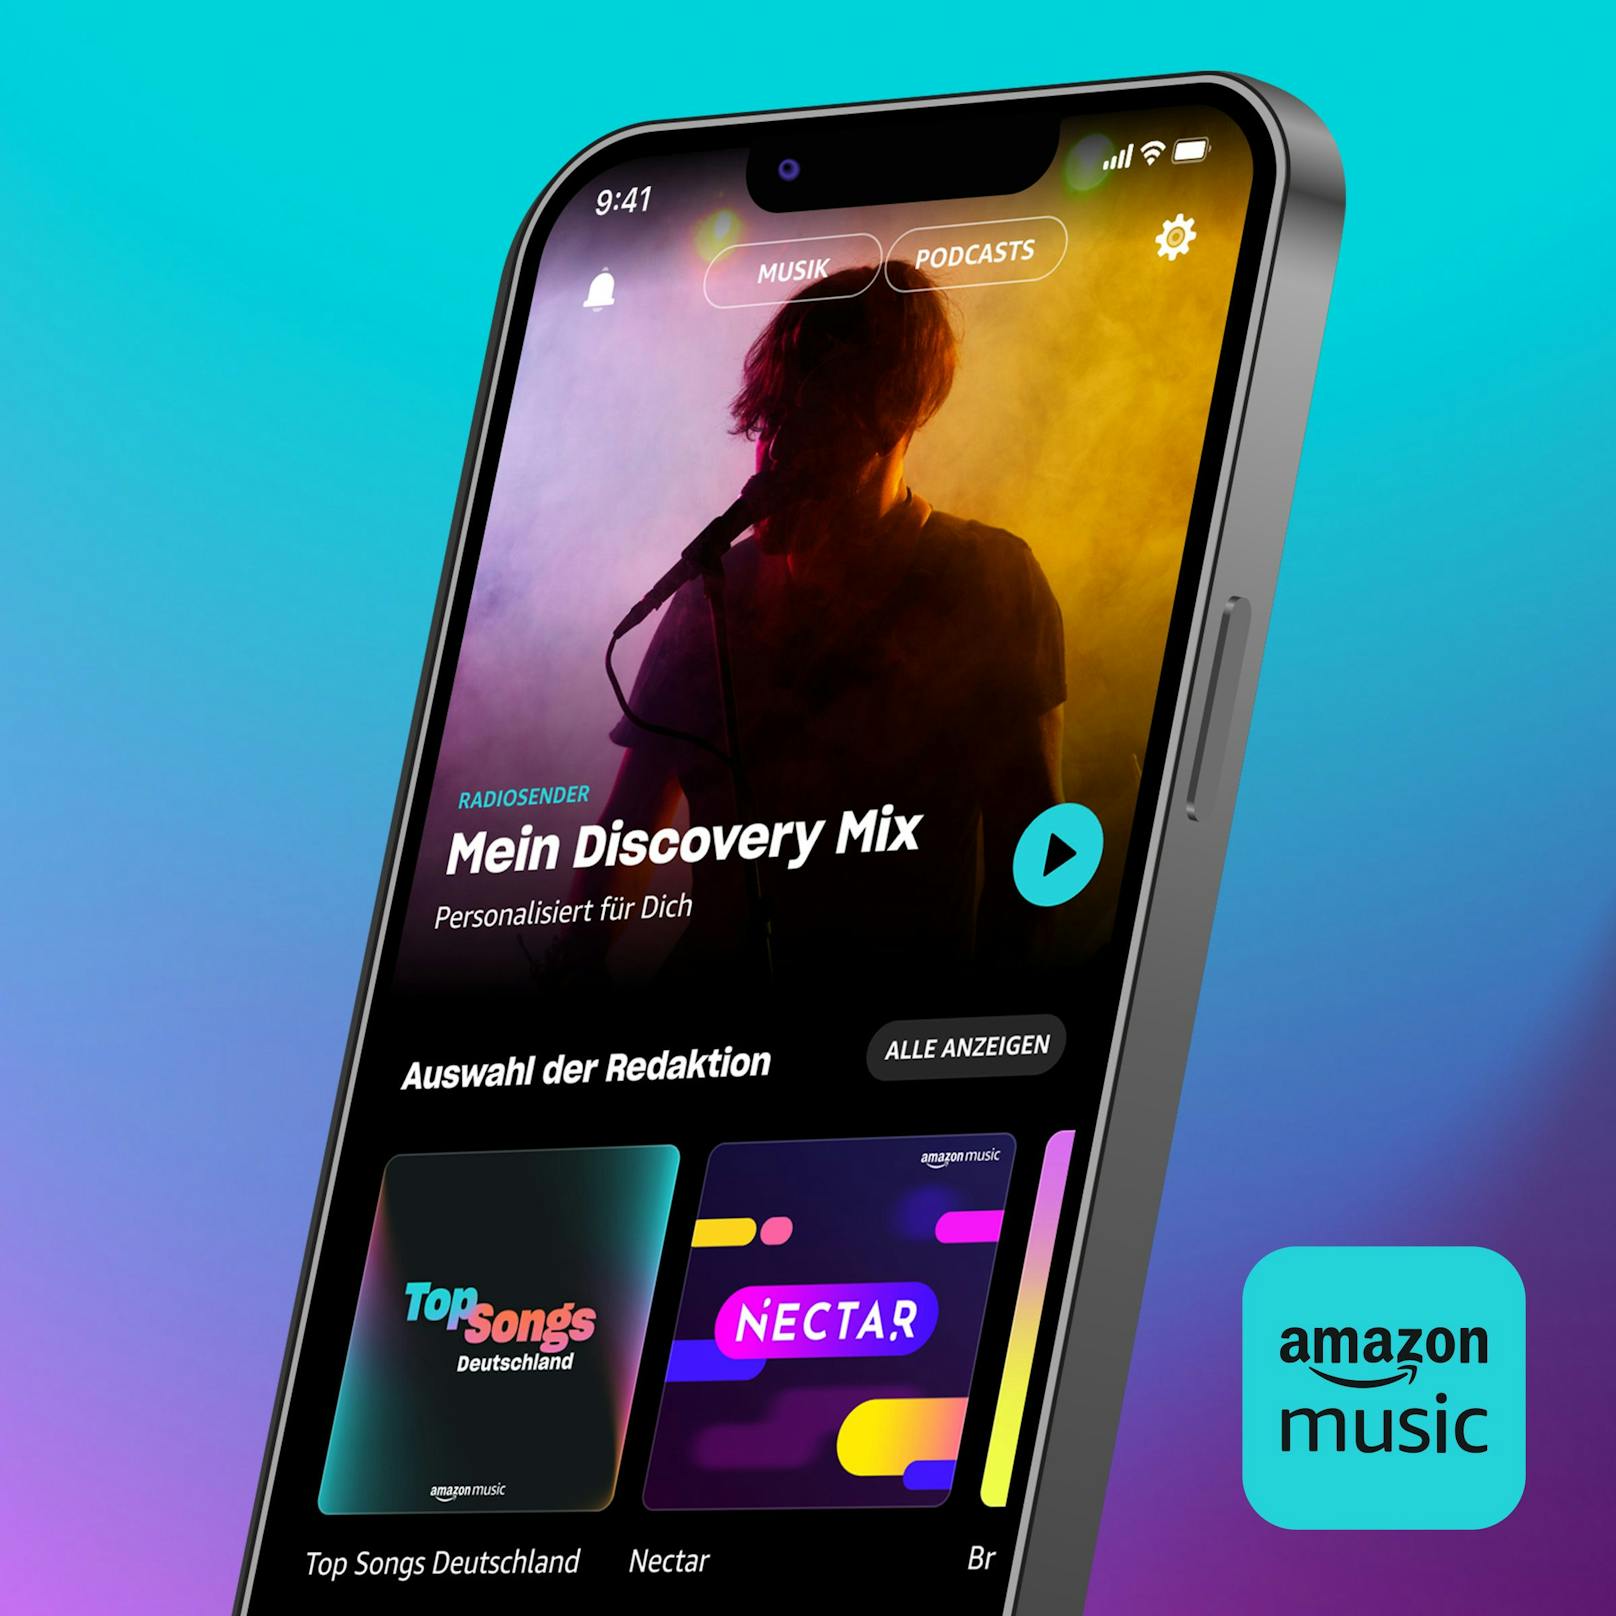 Amazon Music erweitert die Prime-Vorteile, jetzt mit dem kompletten Musikkatalog und den meisten Top-Podcasts, ohne Werbung.